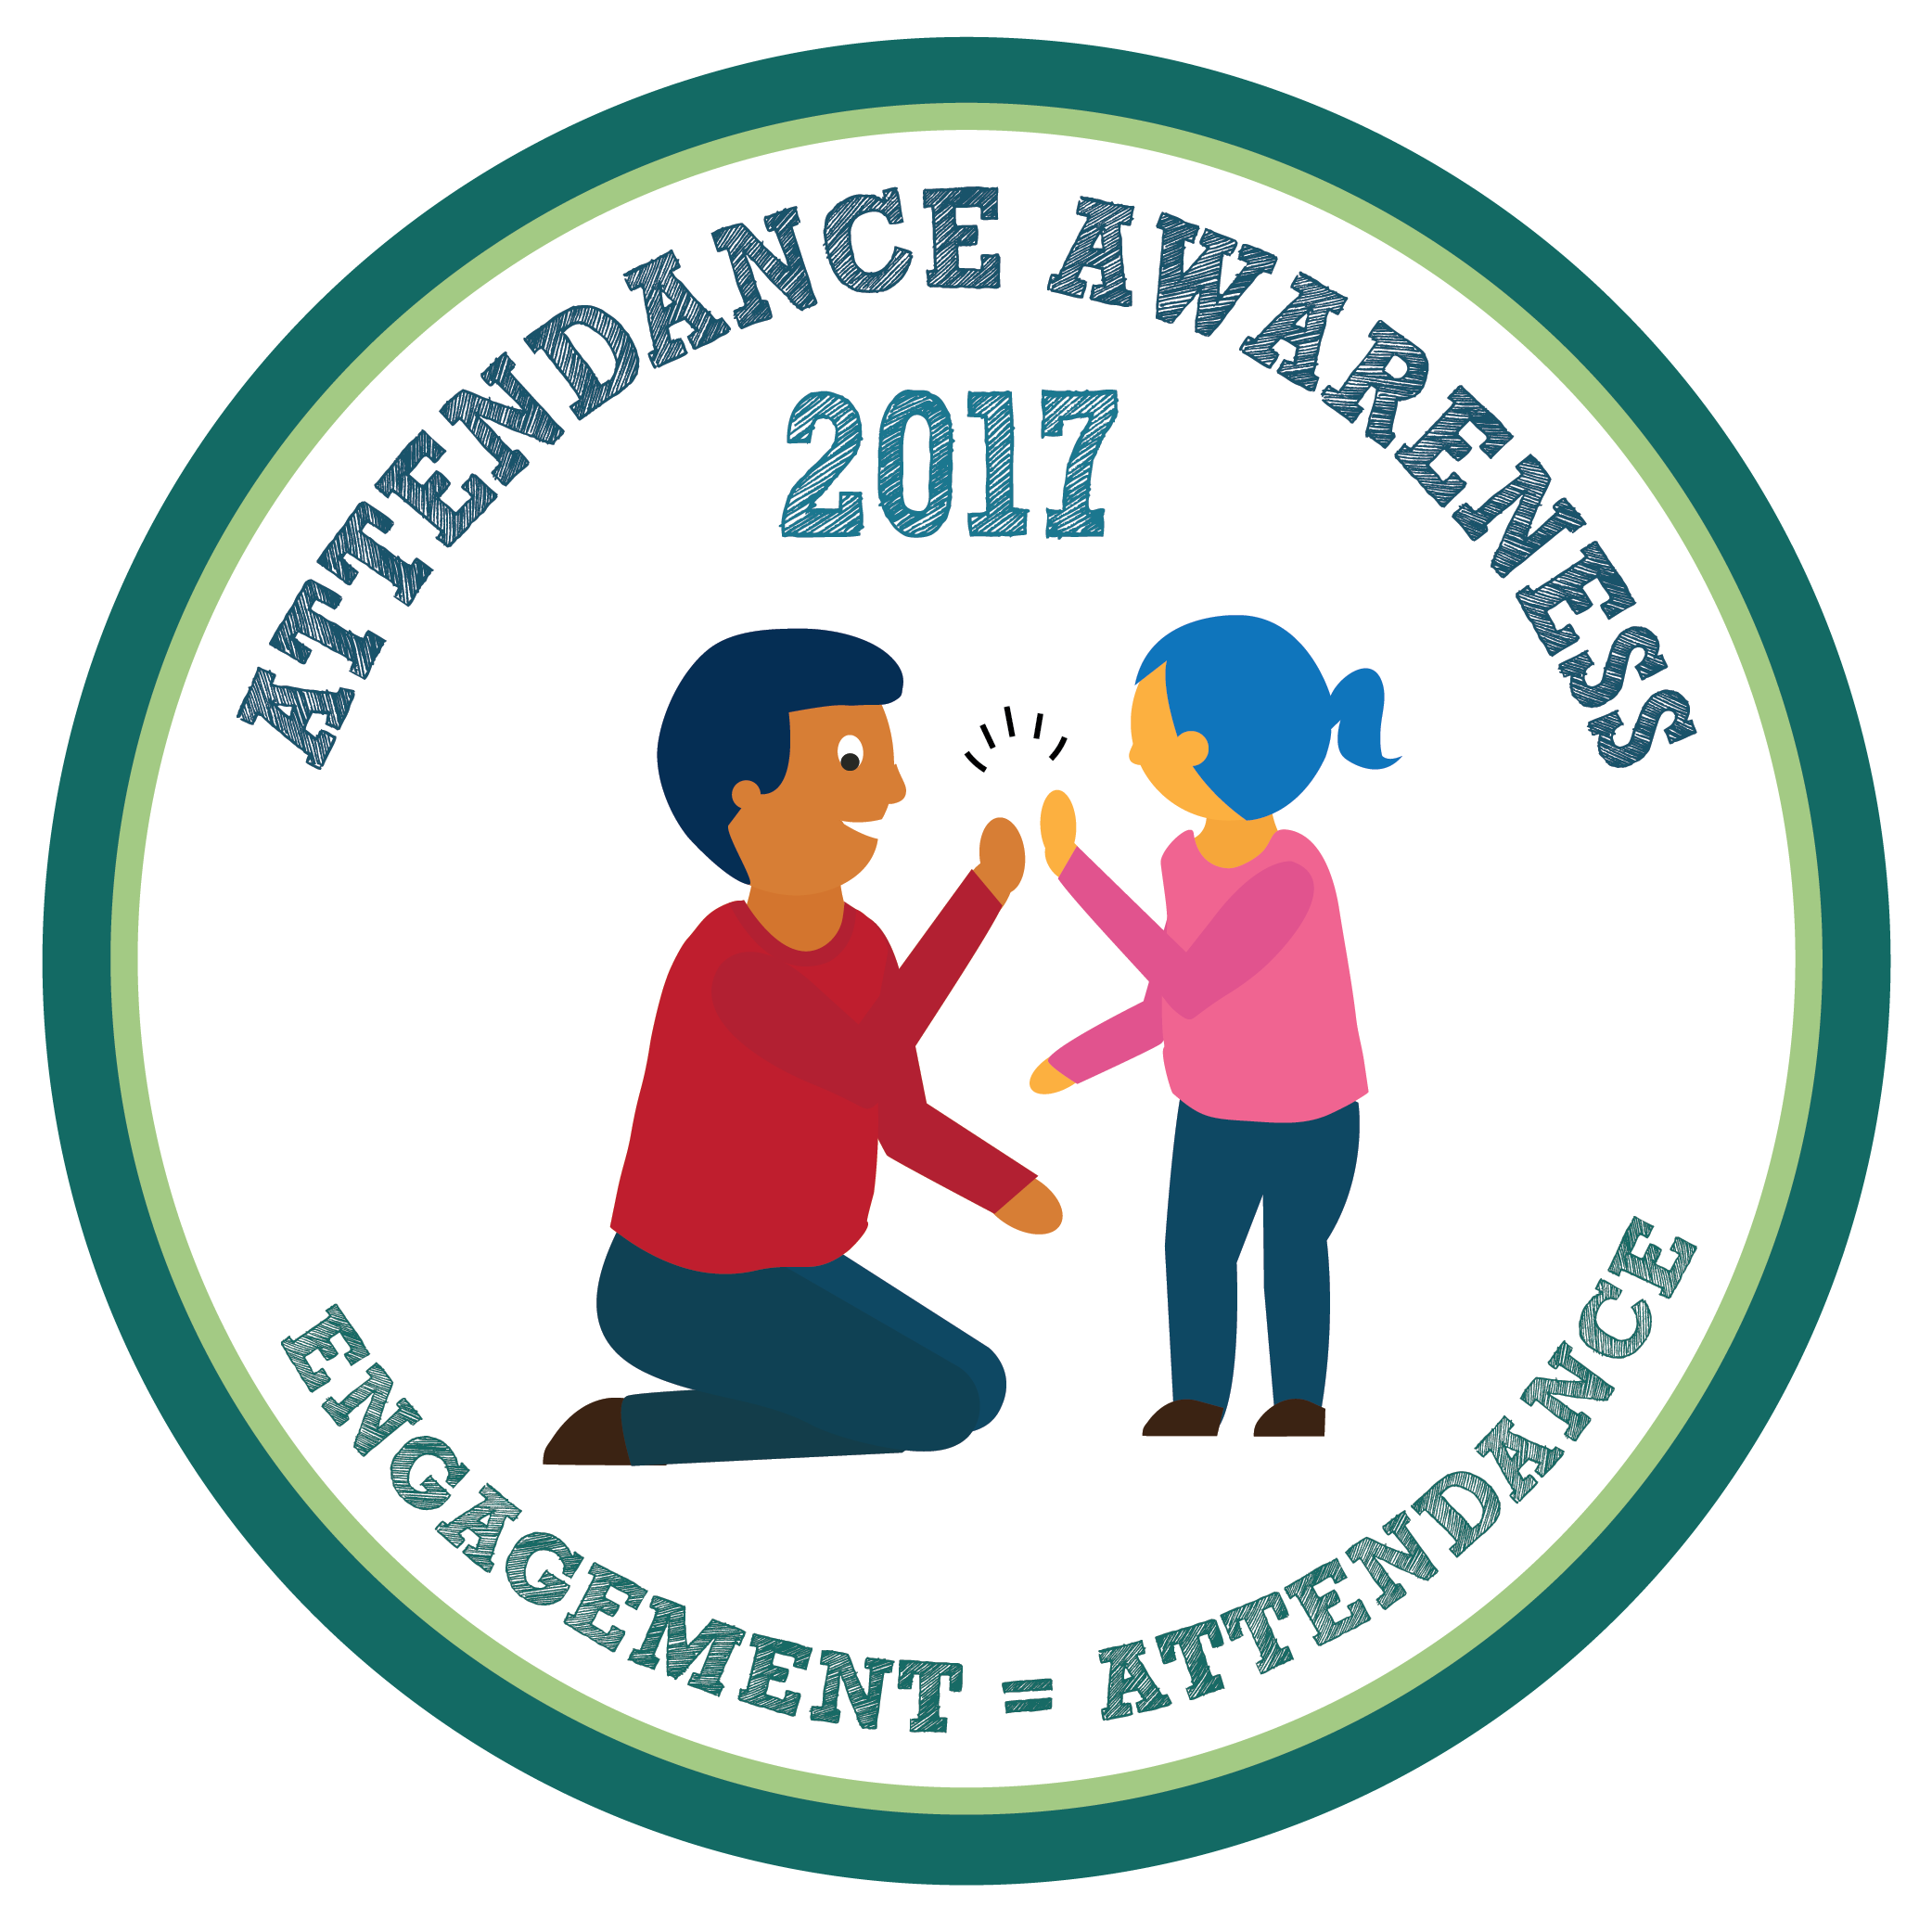 September is school attendance awareness month